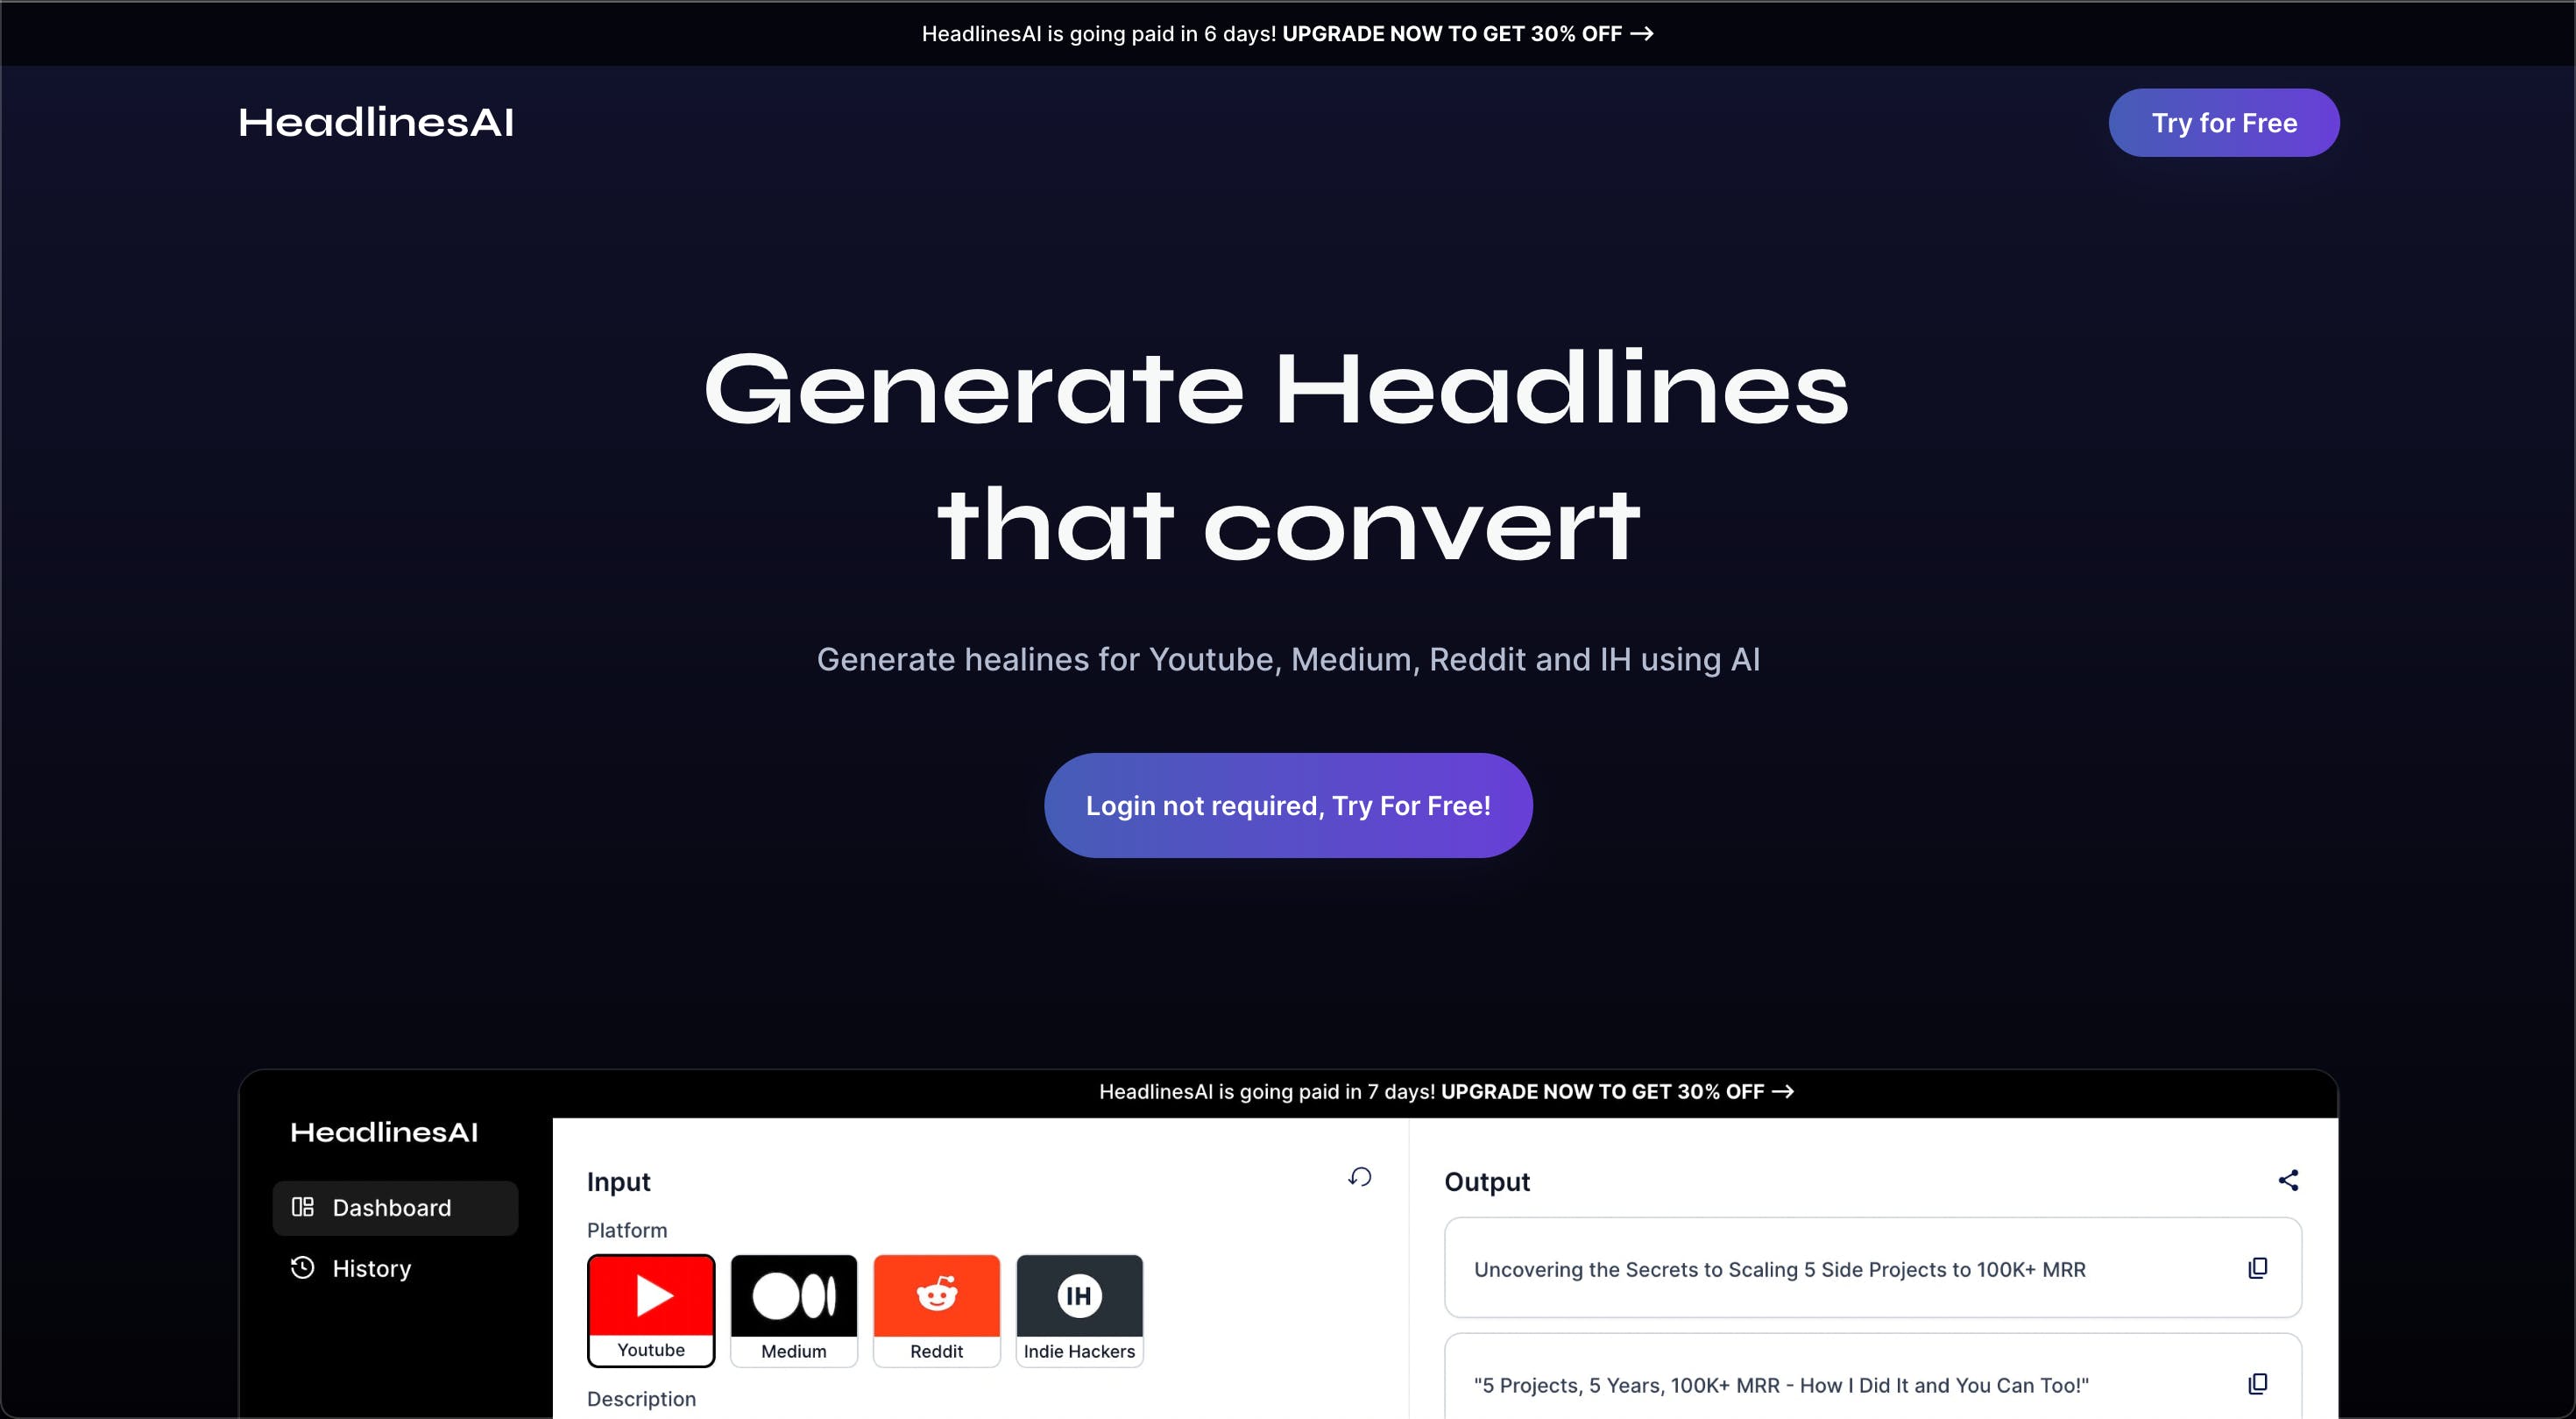 HeadlinesAI - A tool to generate headlines